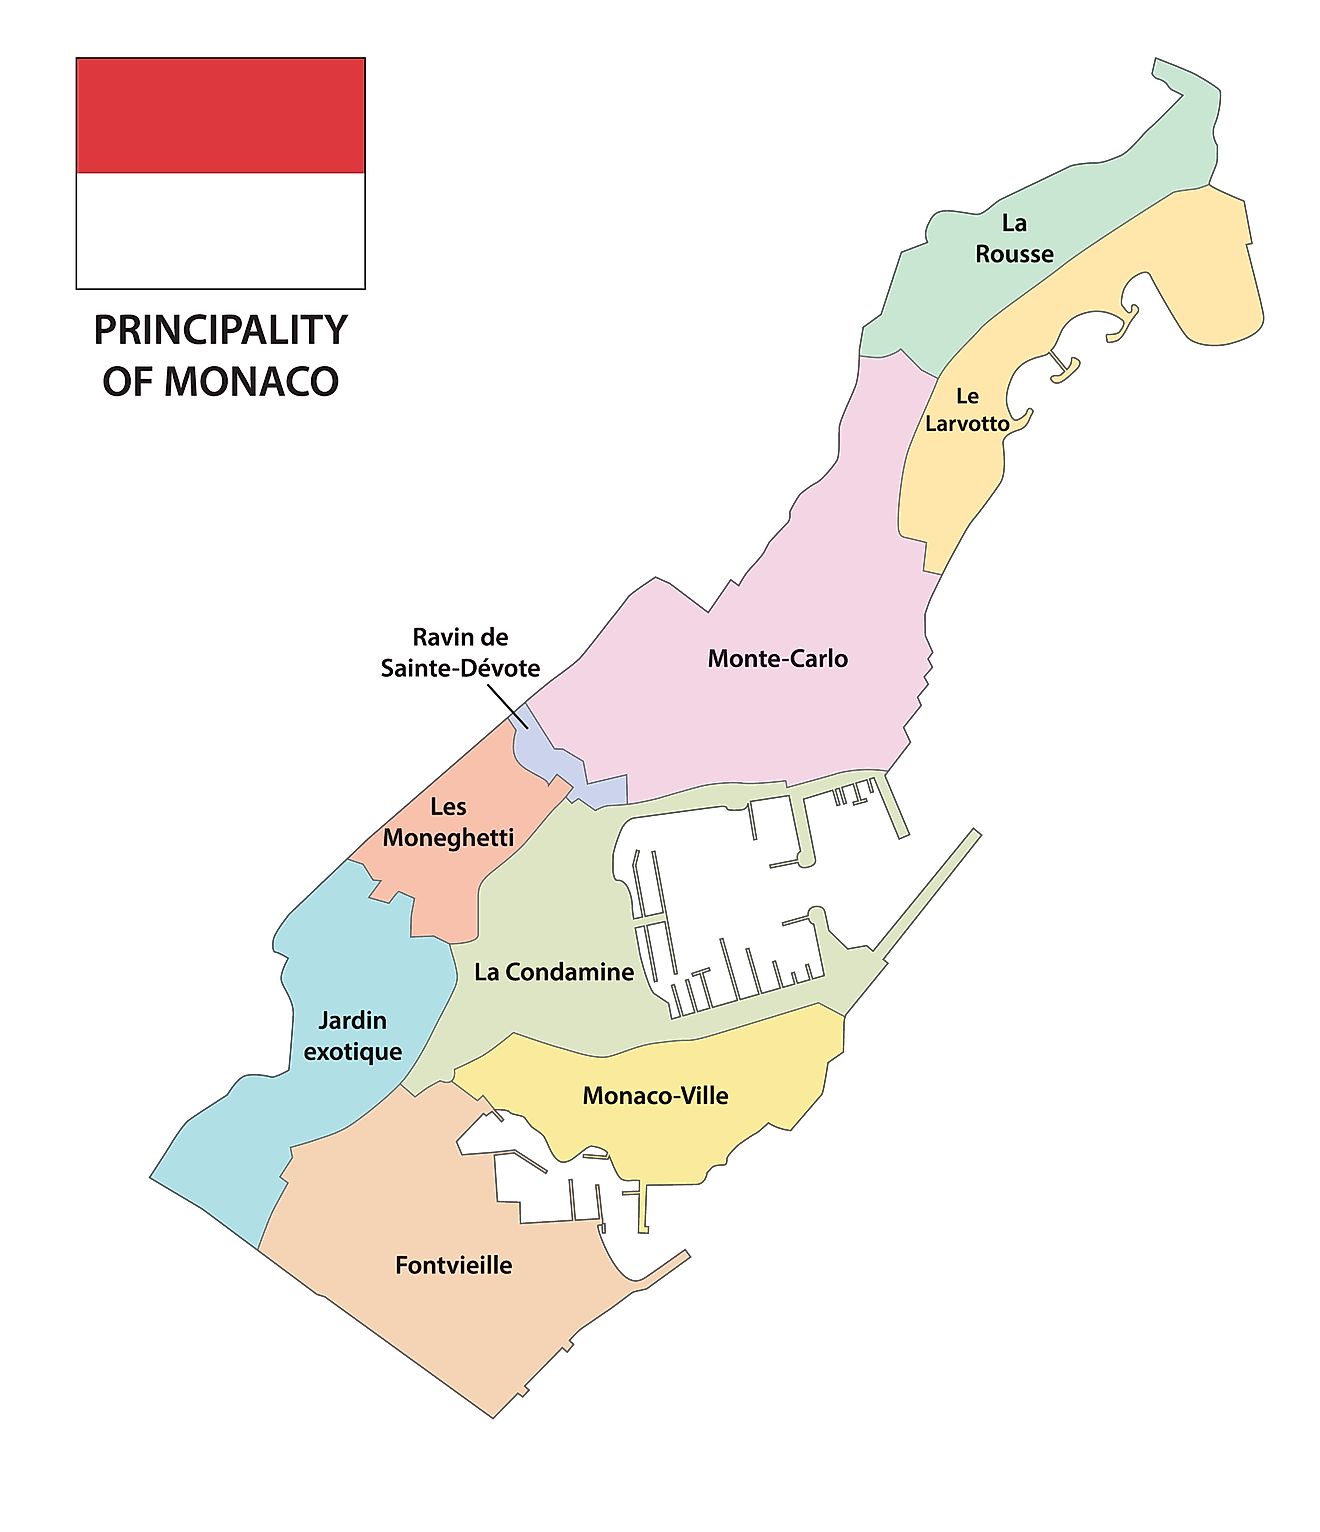 Mapa Político de Mónaco mostrando sus 4 cuartos.